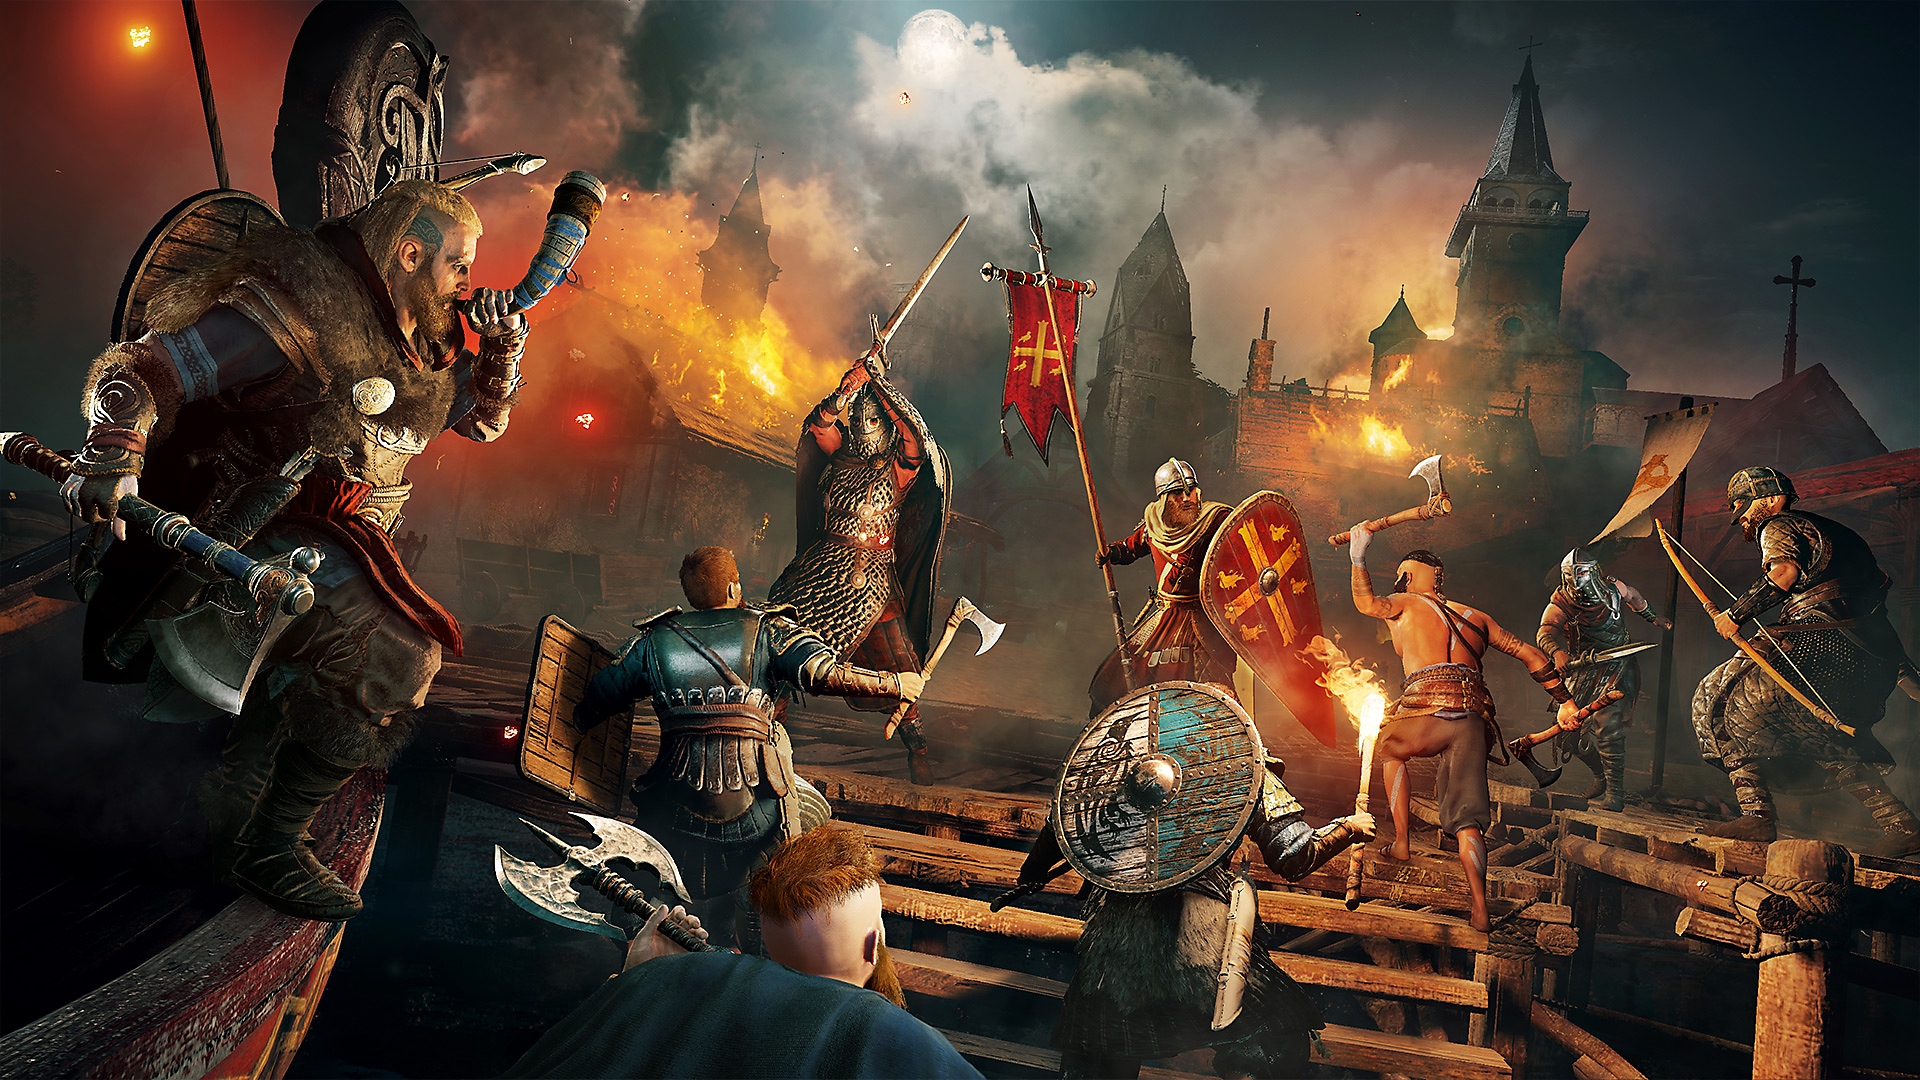 لقطة شاشة للعبة Assassin's Creed Valhalla يظهر فيها العديد من شخصيات غير قابلة للعب تشارك في معركة